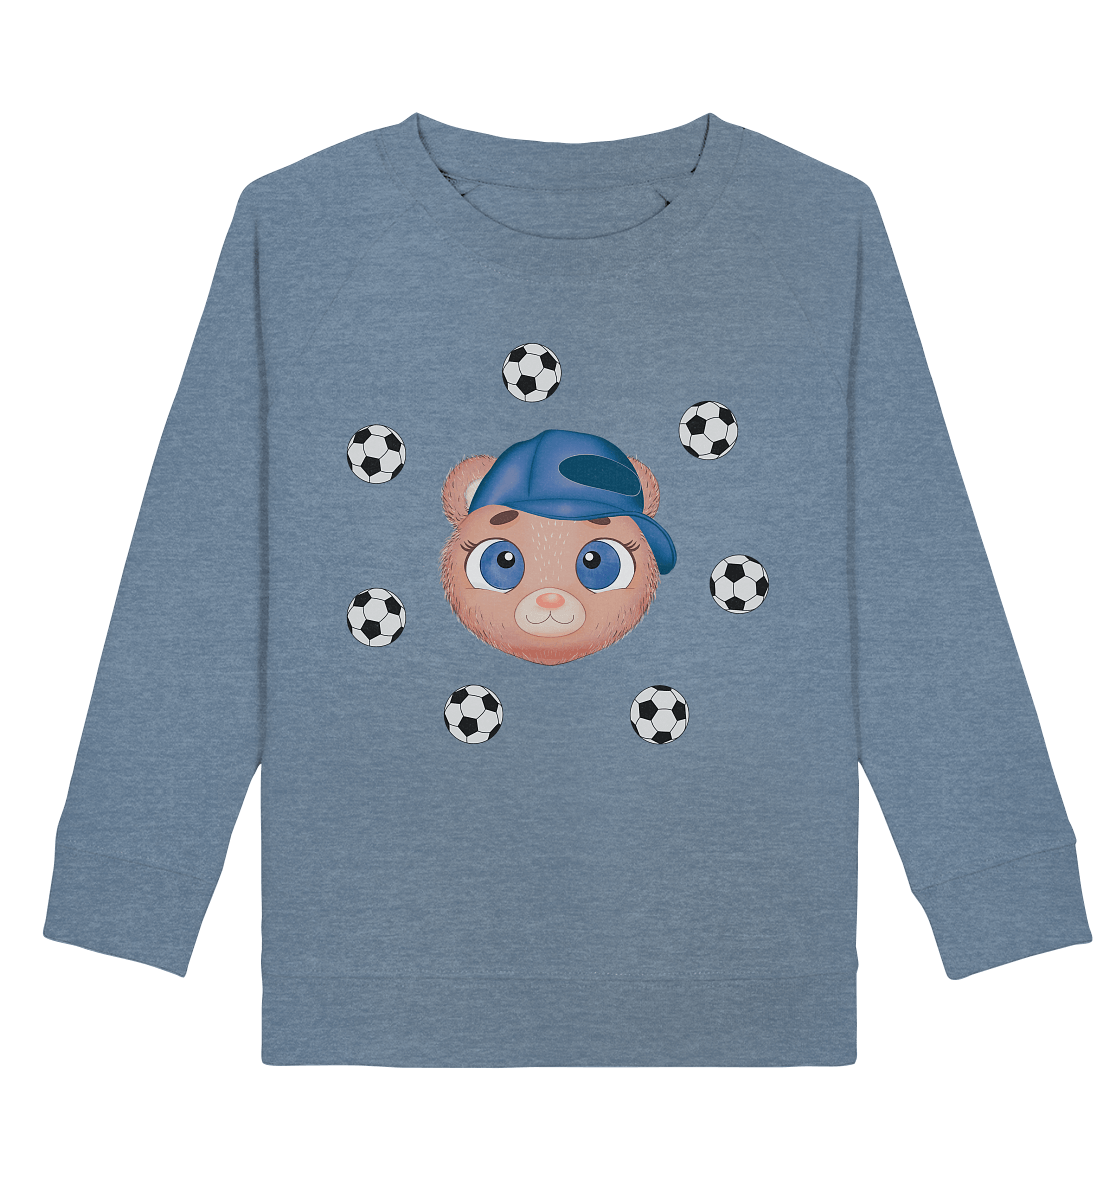 Kinder Sweatshirt Bärchen mit dem Ball